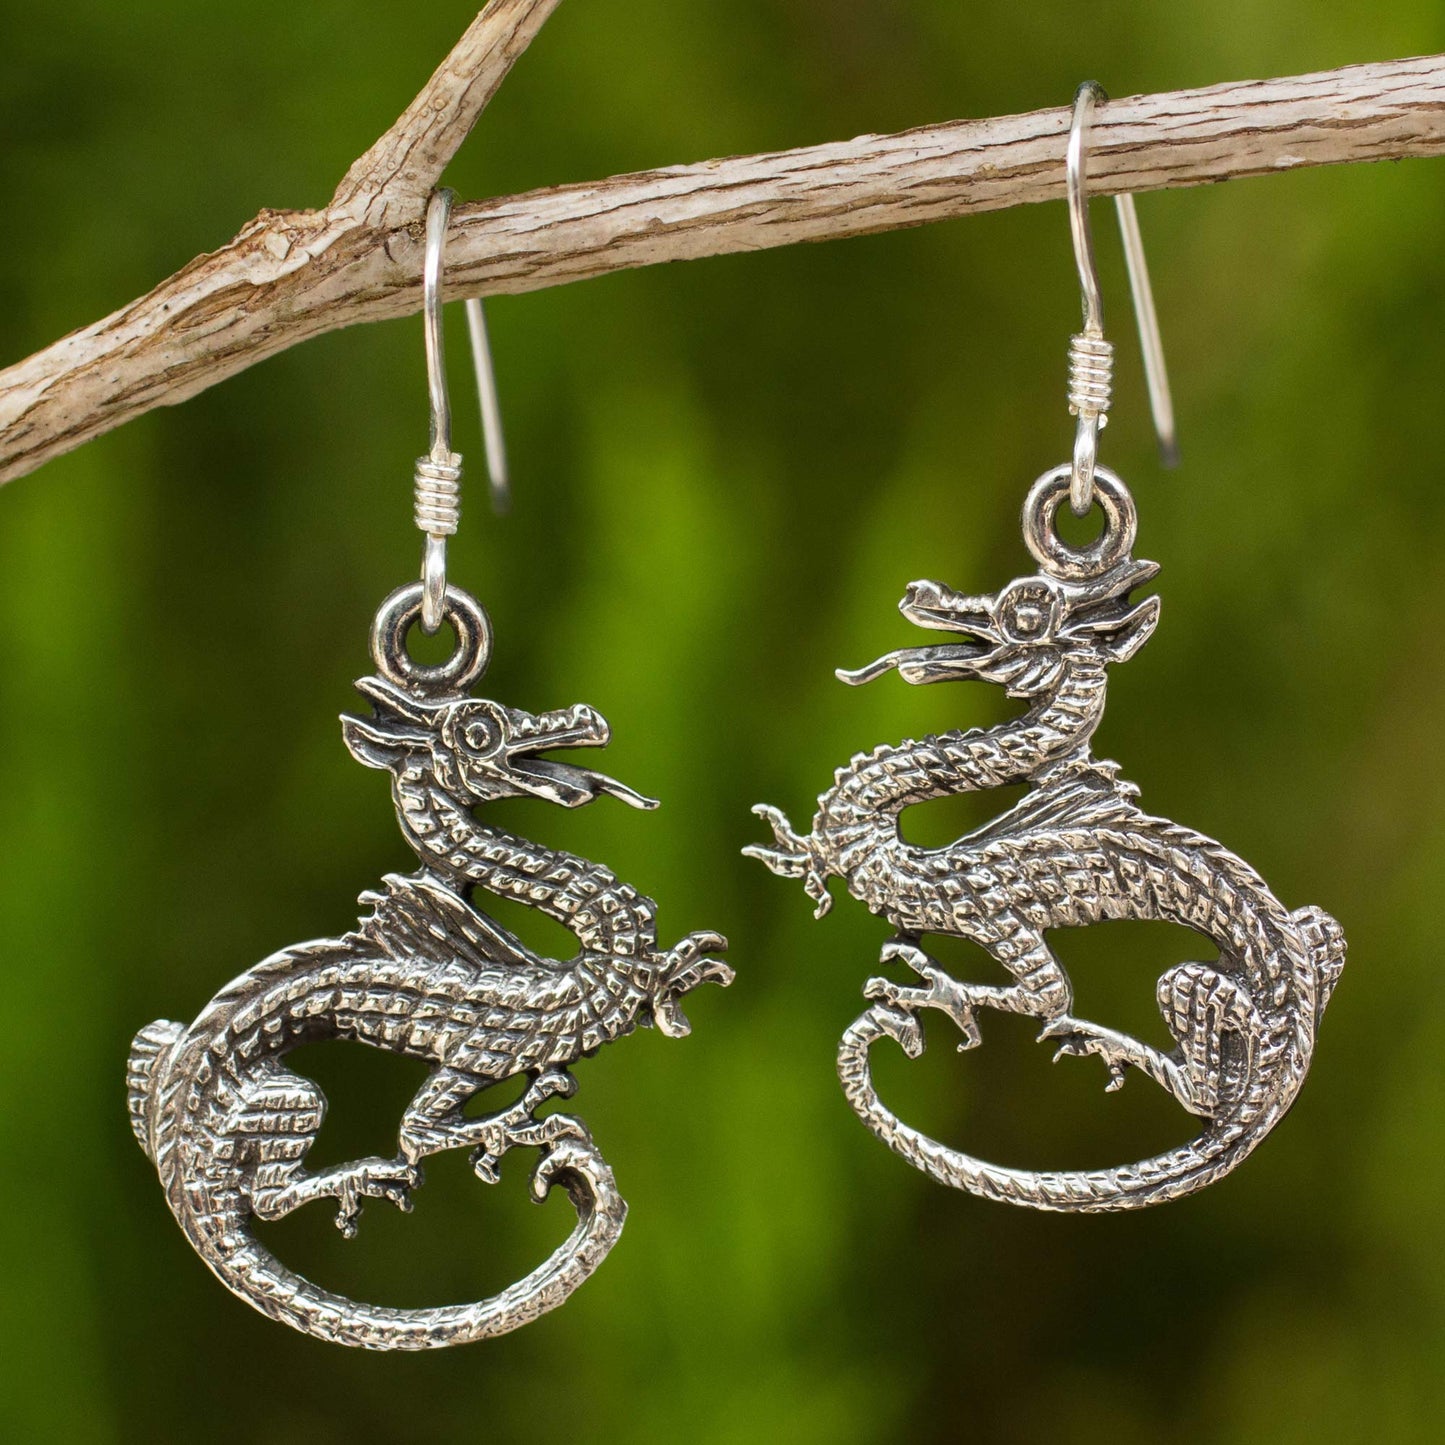 Dragon Duet Sterling Silver Dangle Earrings